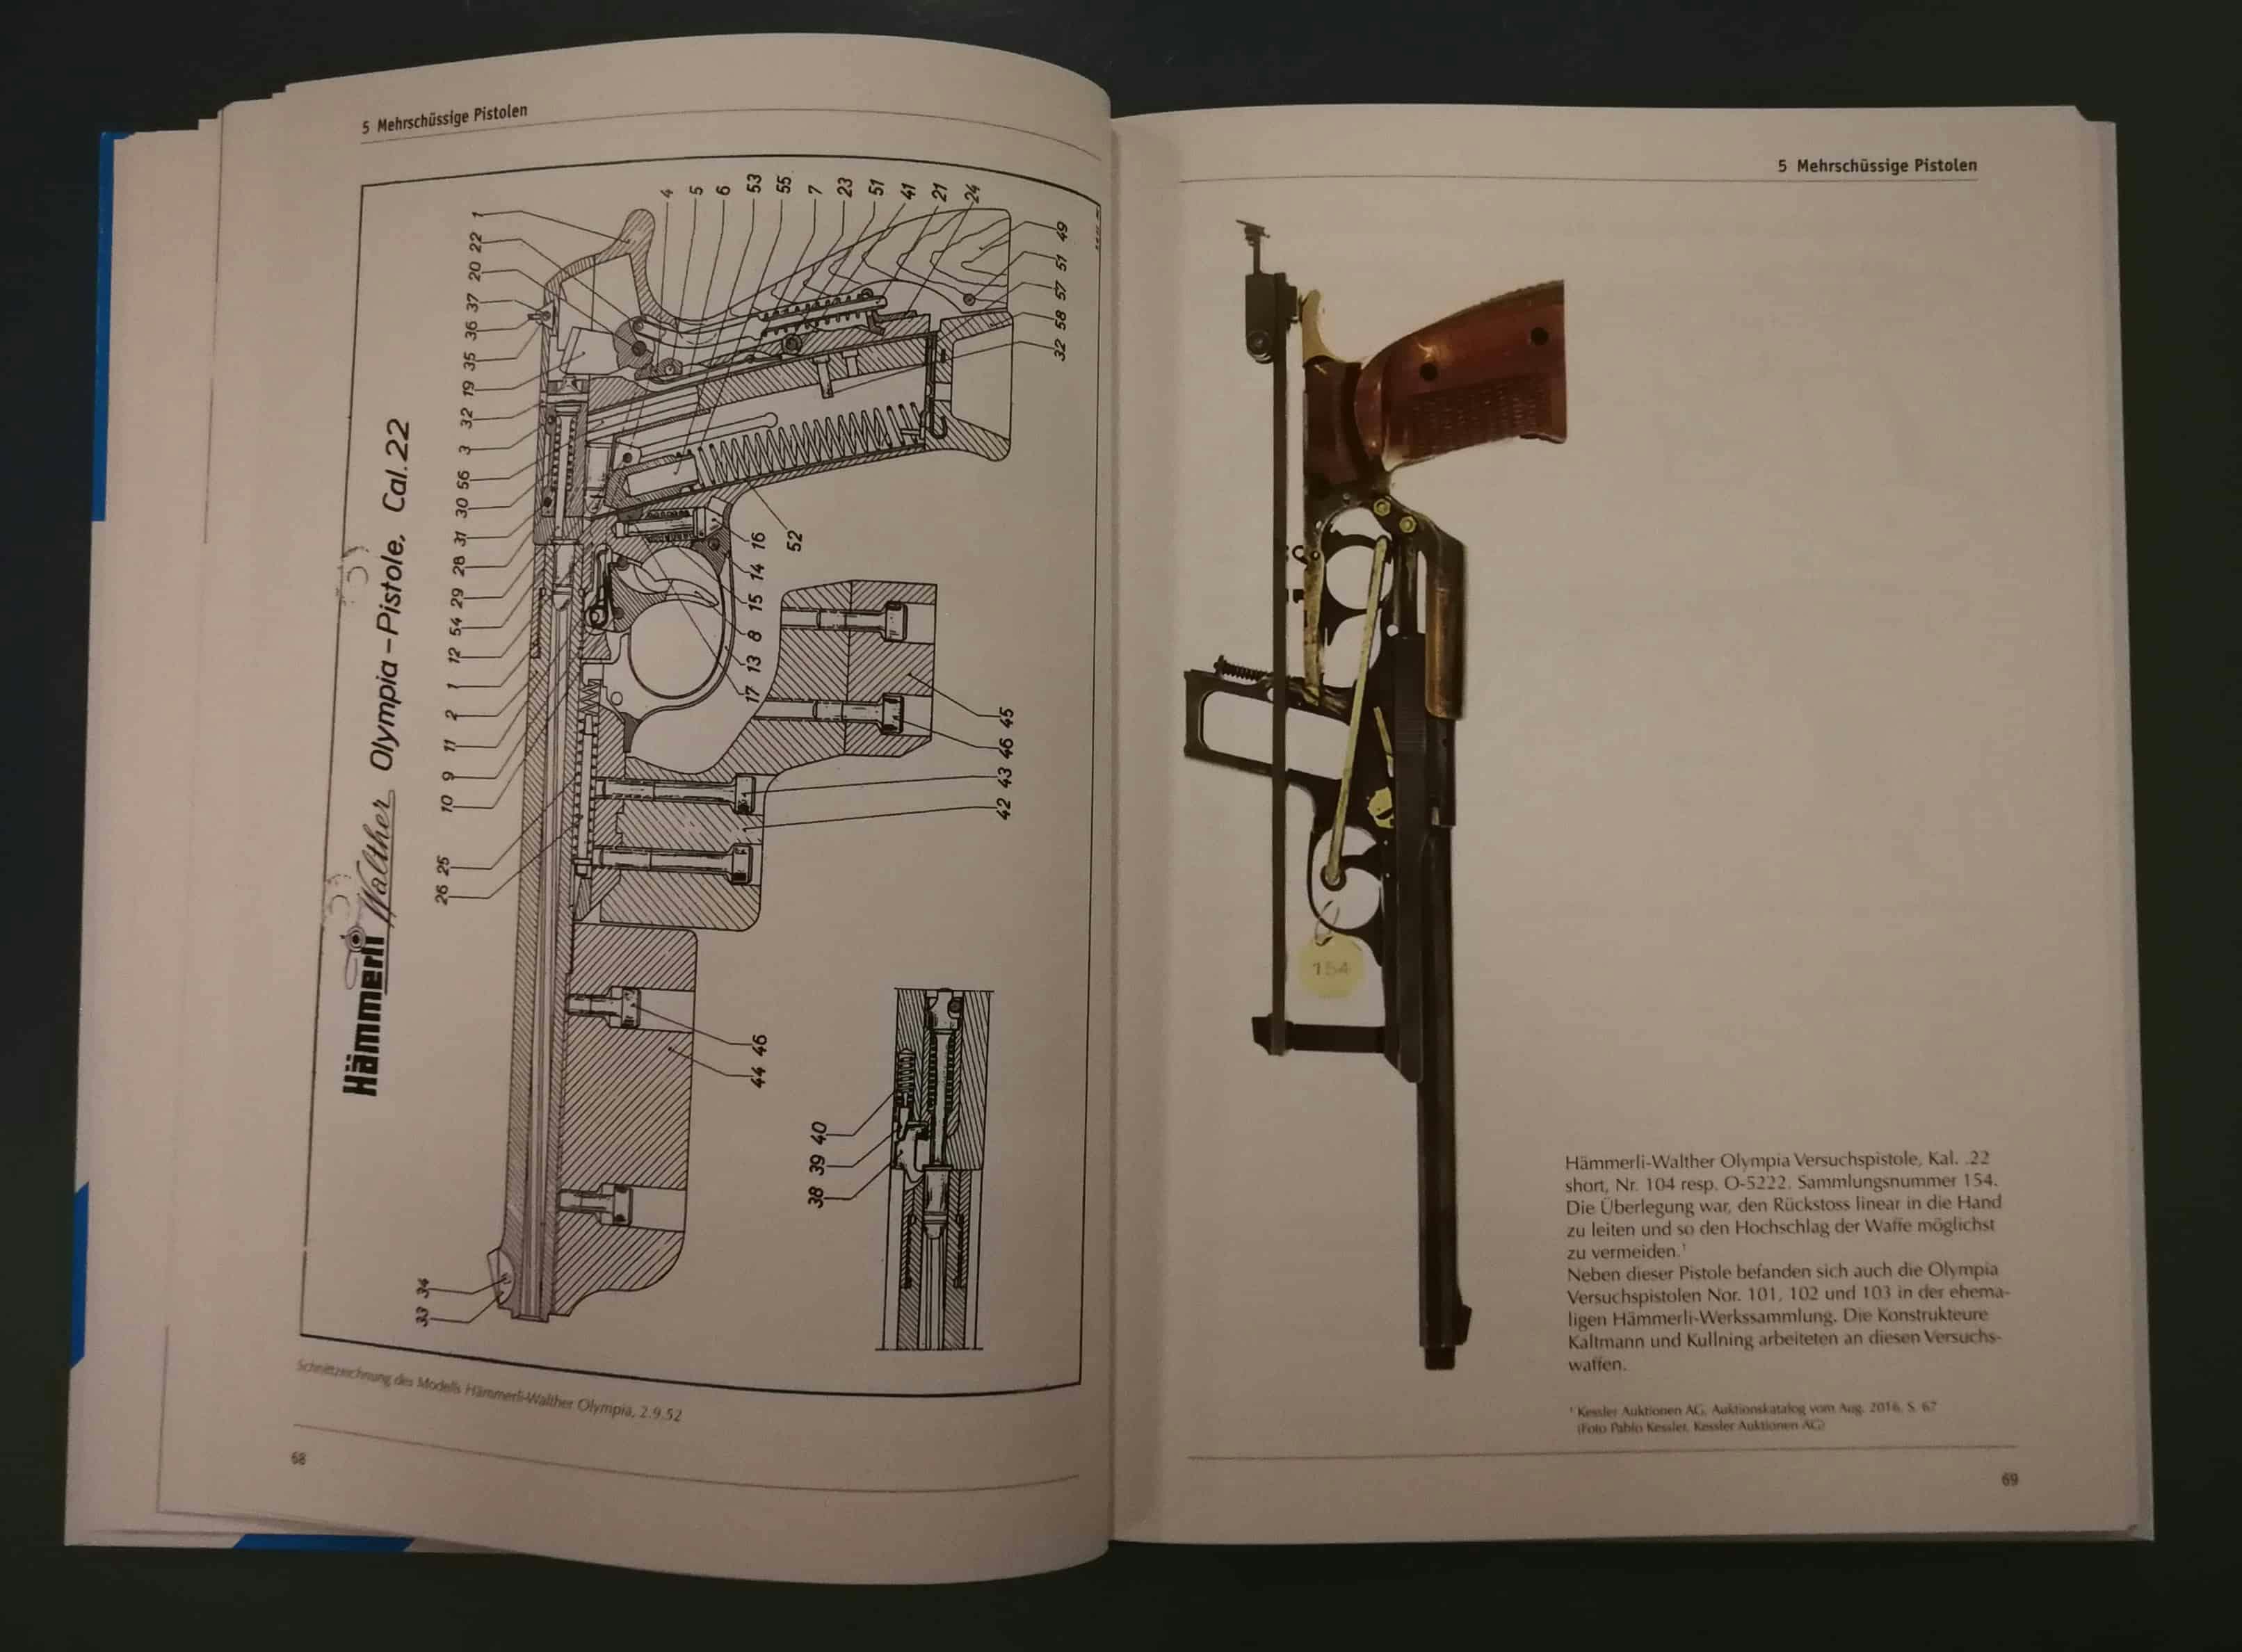 Links Schnittzeichnung der Hämmerli_Walther Olympia-Pistole. Rechts eine kurios ausschauende Versuchspistole (eine Antwort auf die Sowjetische TOZ MTs Rekord?)